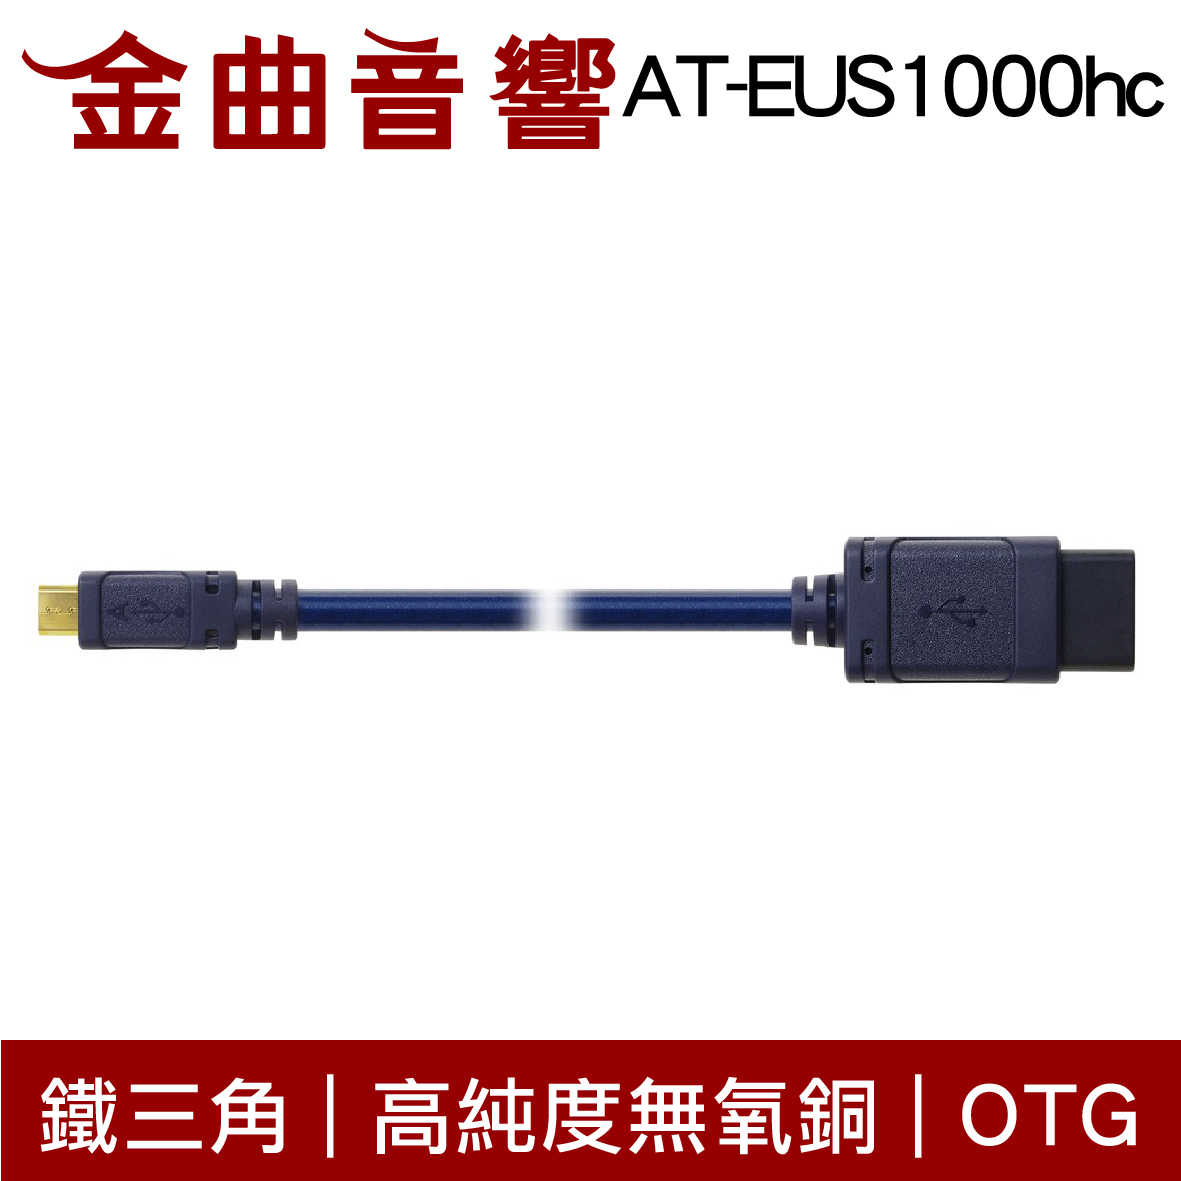 鐵三角 AT-EUS1000hc 高純度無氧銅 OTG USB 轉接線 | 金曲音響